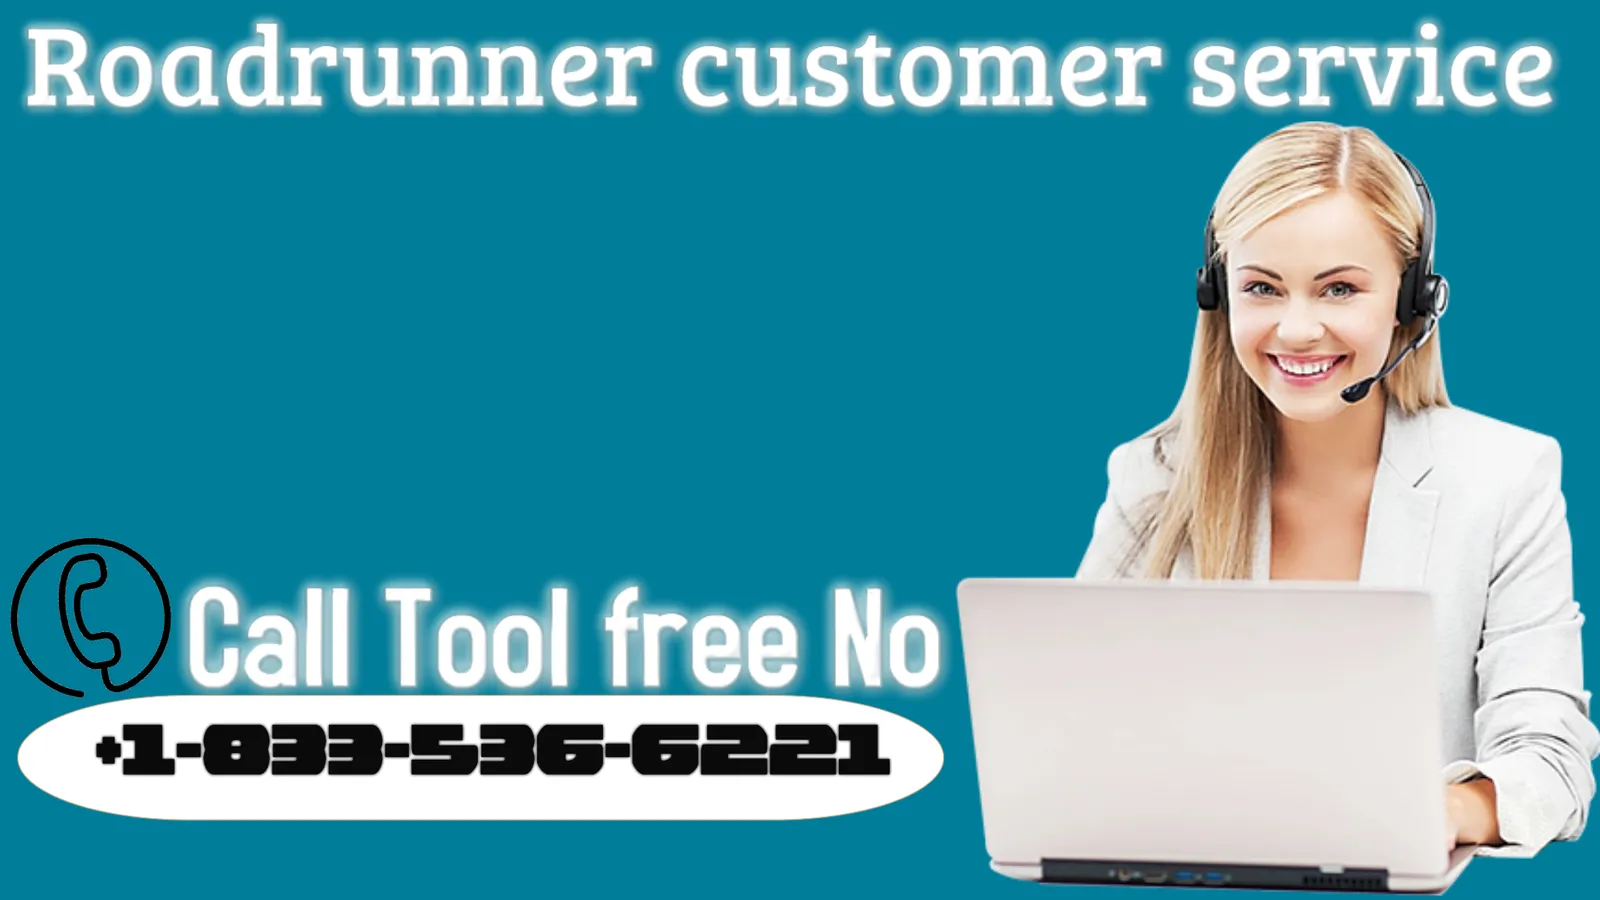 Roadrunner customer service